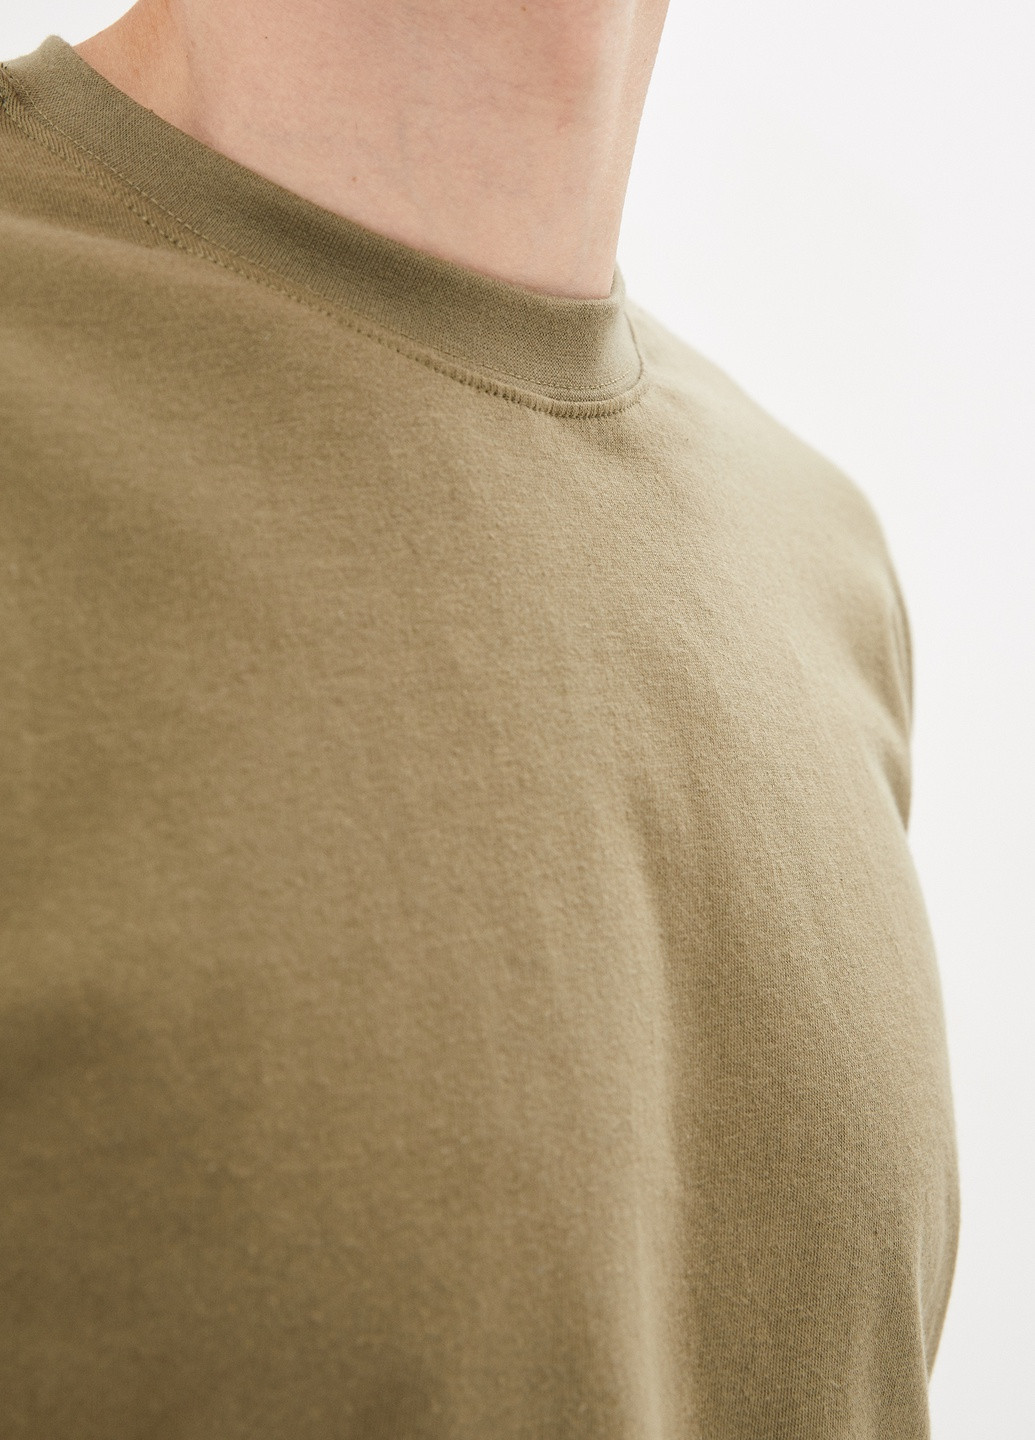 Хакі (оливкова) футболка чоловіча базова з коротким рукавом Роза